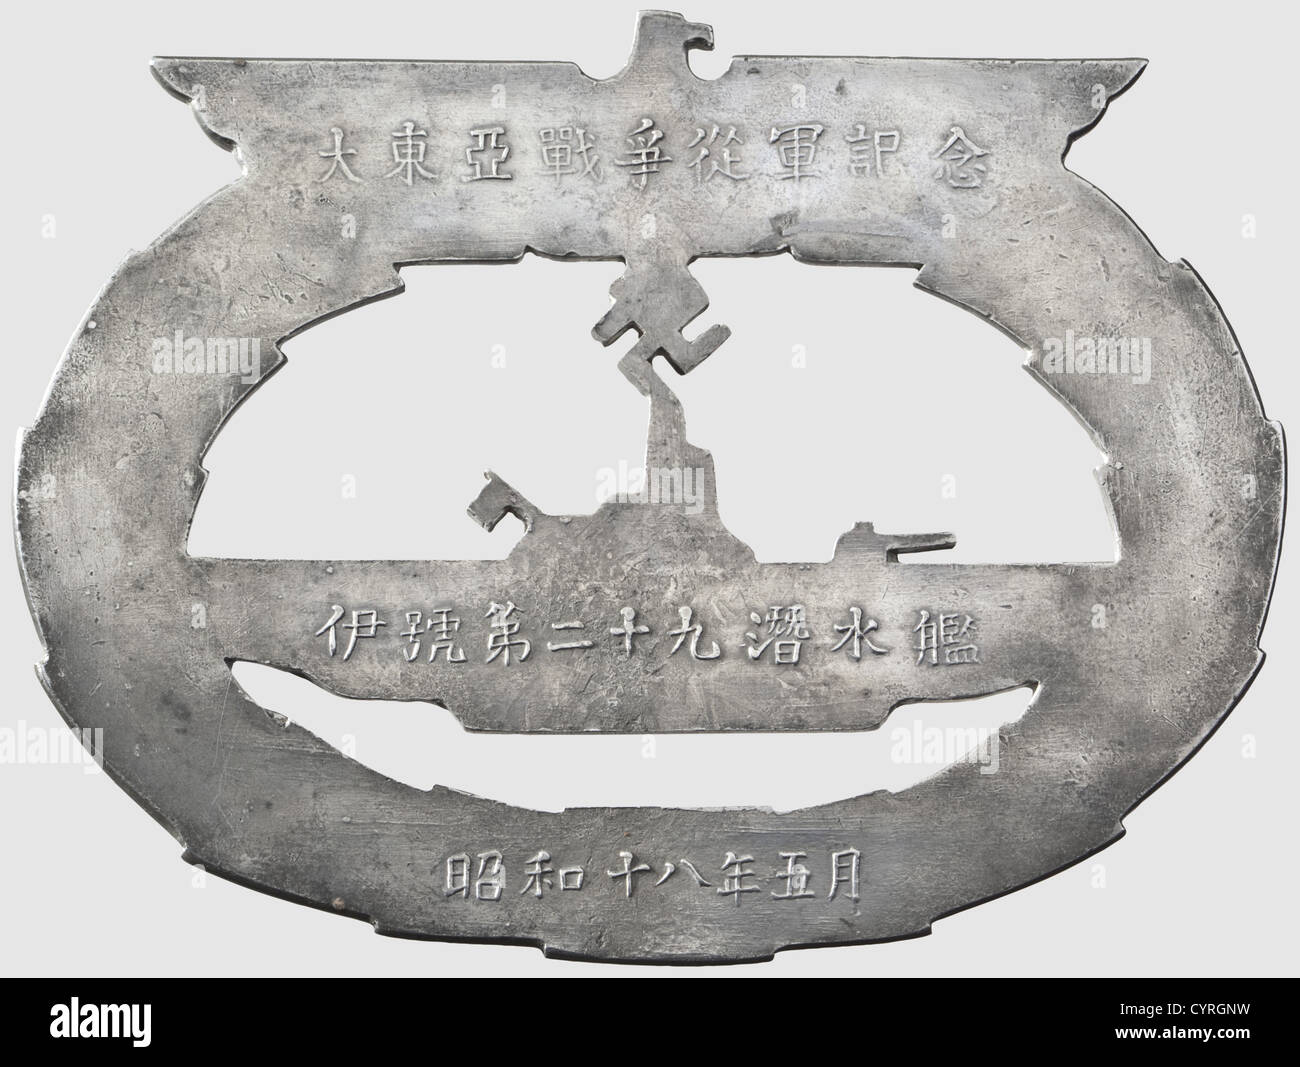 Ehrengeschenk der Offiziere der kaiserlichen japanischen U-Boot I-29, an die Offiziere der deutschen U-Boot-Force-Plakette in Form eines U-Boot-Kriegsabzeichen, Metallguss mit eingravierten Umrissen und Details.die Rückseite mit drei Zeilen in japanischer Schrift beschriftet, lesen "in Gedenken an den Krieg in der Ferne Ost', 'I-class Submarine 29' und 'Showa 18,May'(Mai 1943).Ca. 156 x 118 mm.mit einer Hochzeitsausgabe von 'Mein Kampf' der Stadt Kiel und 'More than Merchants' von Khoo Salma Nasution,einem Buch über die deutsche Kolonie in Penang,t,Additional-Rights-Clearences-nicht verfügbar Stockfoto